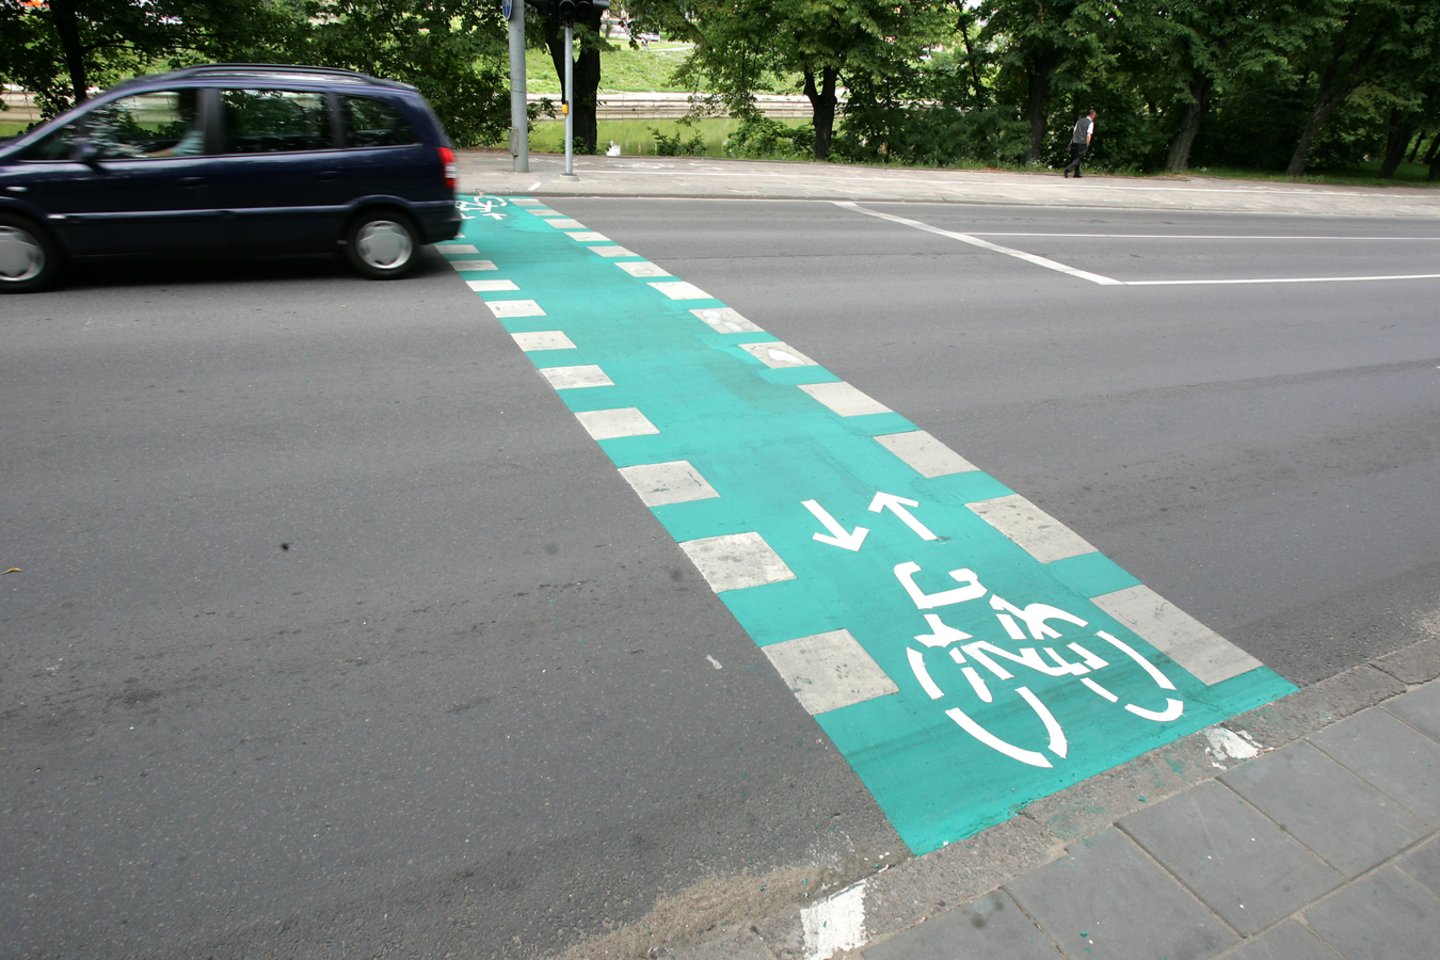 Ši pėsčiųjų ir dviračių tako jungtis taptų svarbia kokybiško, nenutrūkstamo dviračių ir pėsčiųjų tako tinklo dalimi tiek Alytaus miesto, tiek rajono gyventojams.<br>V.Balkūno nuotr.